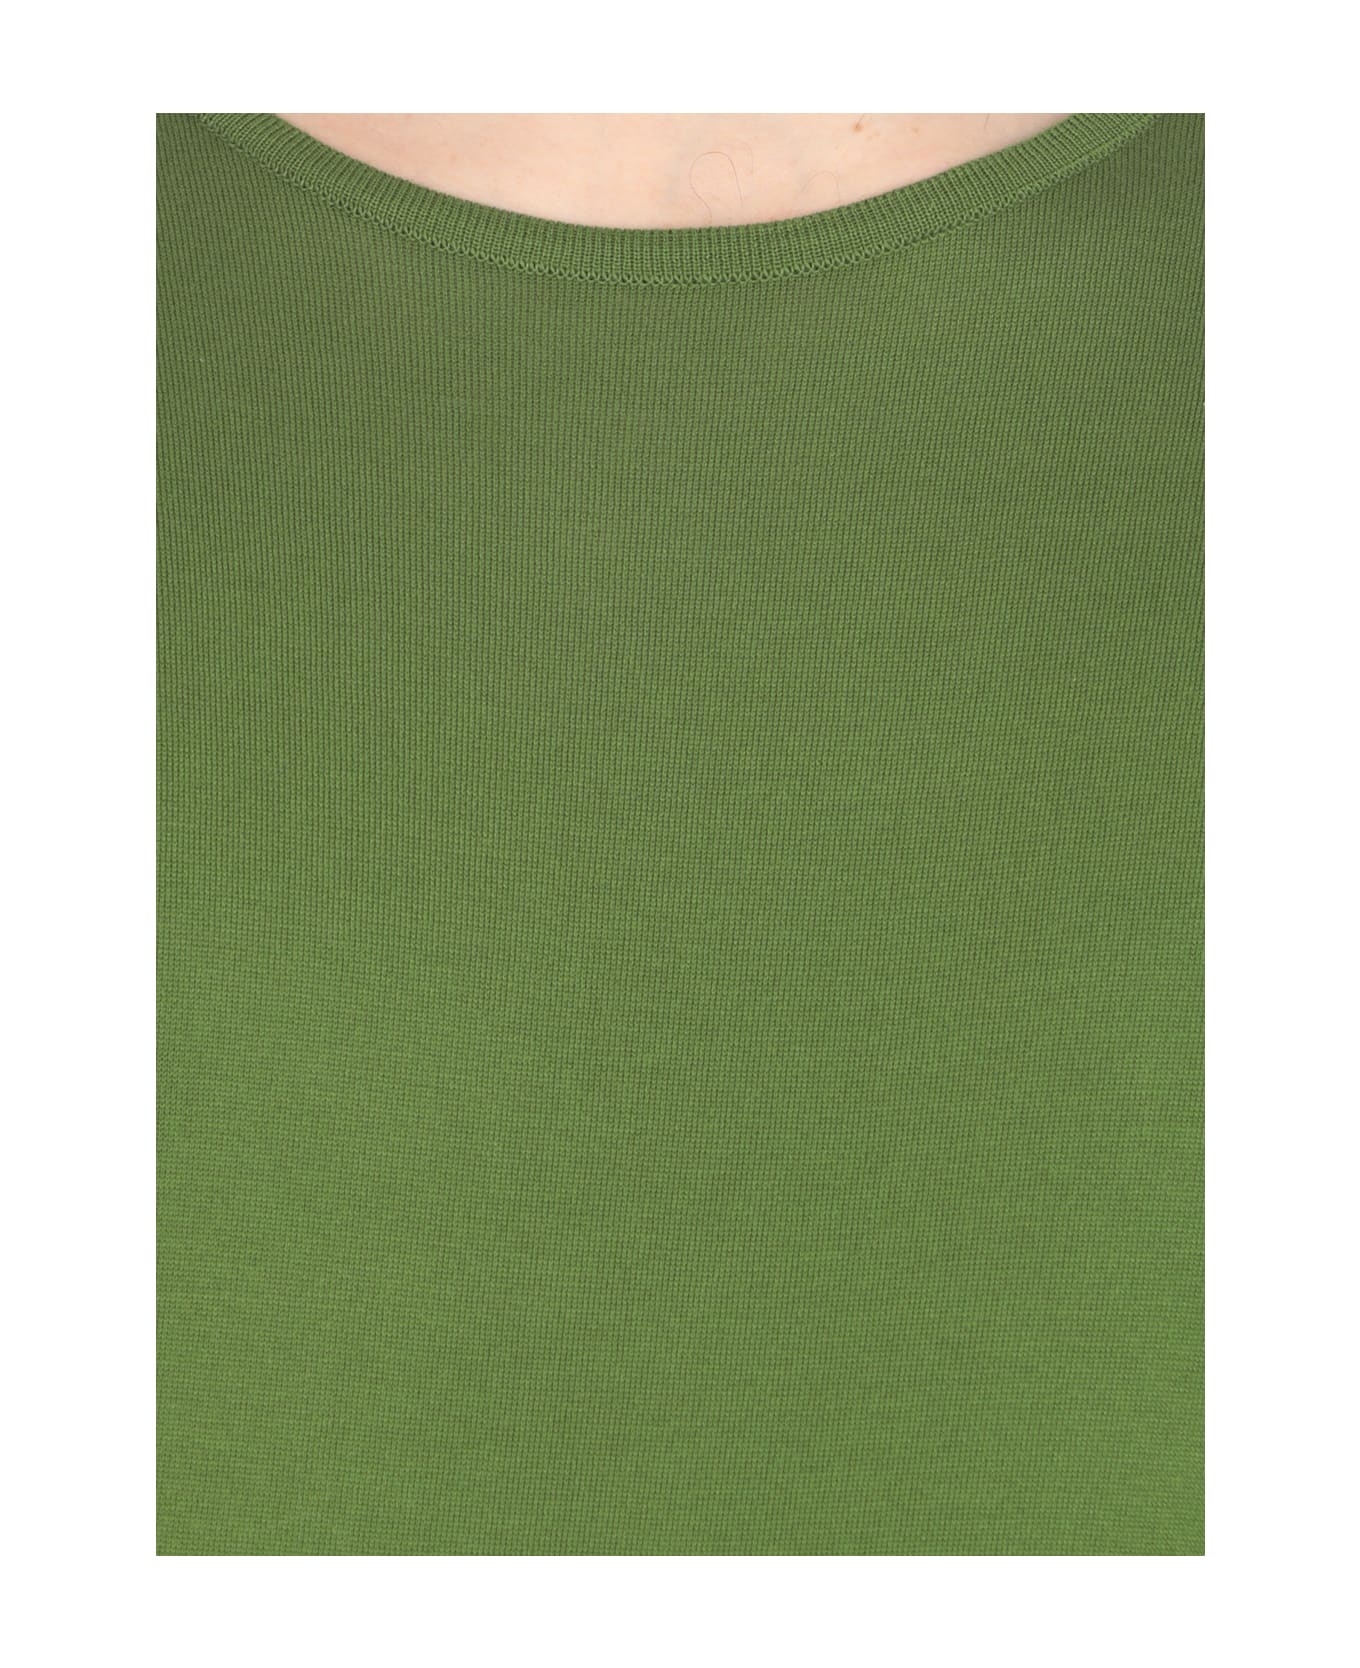 John Smedley Belden T-shirt - Green